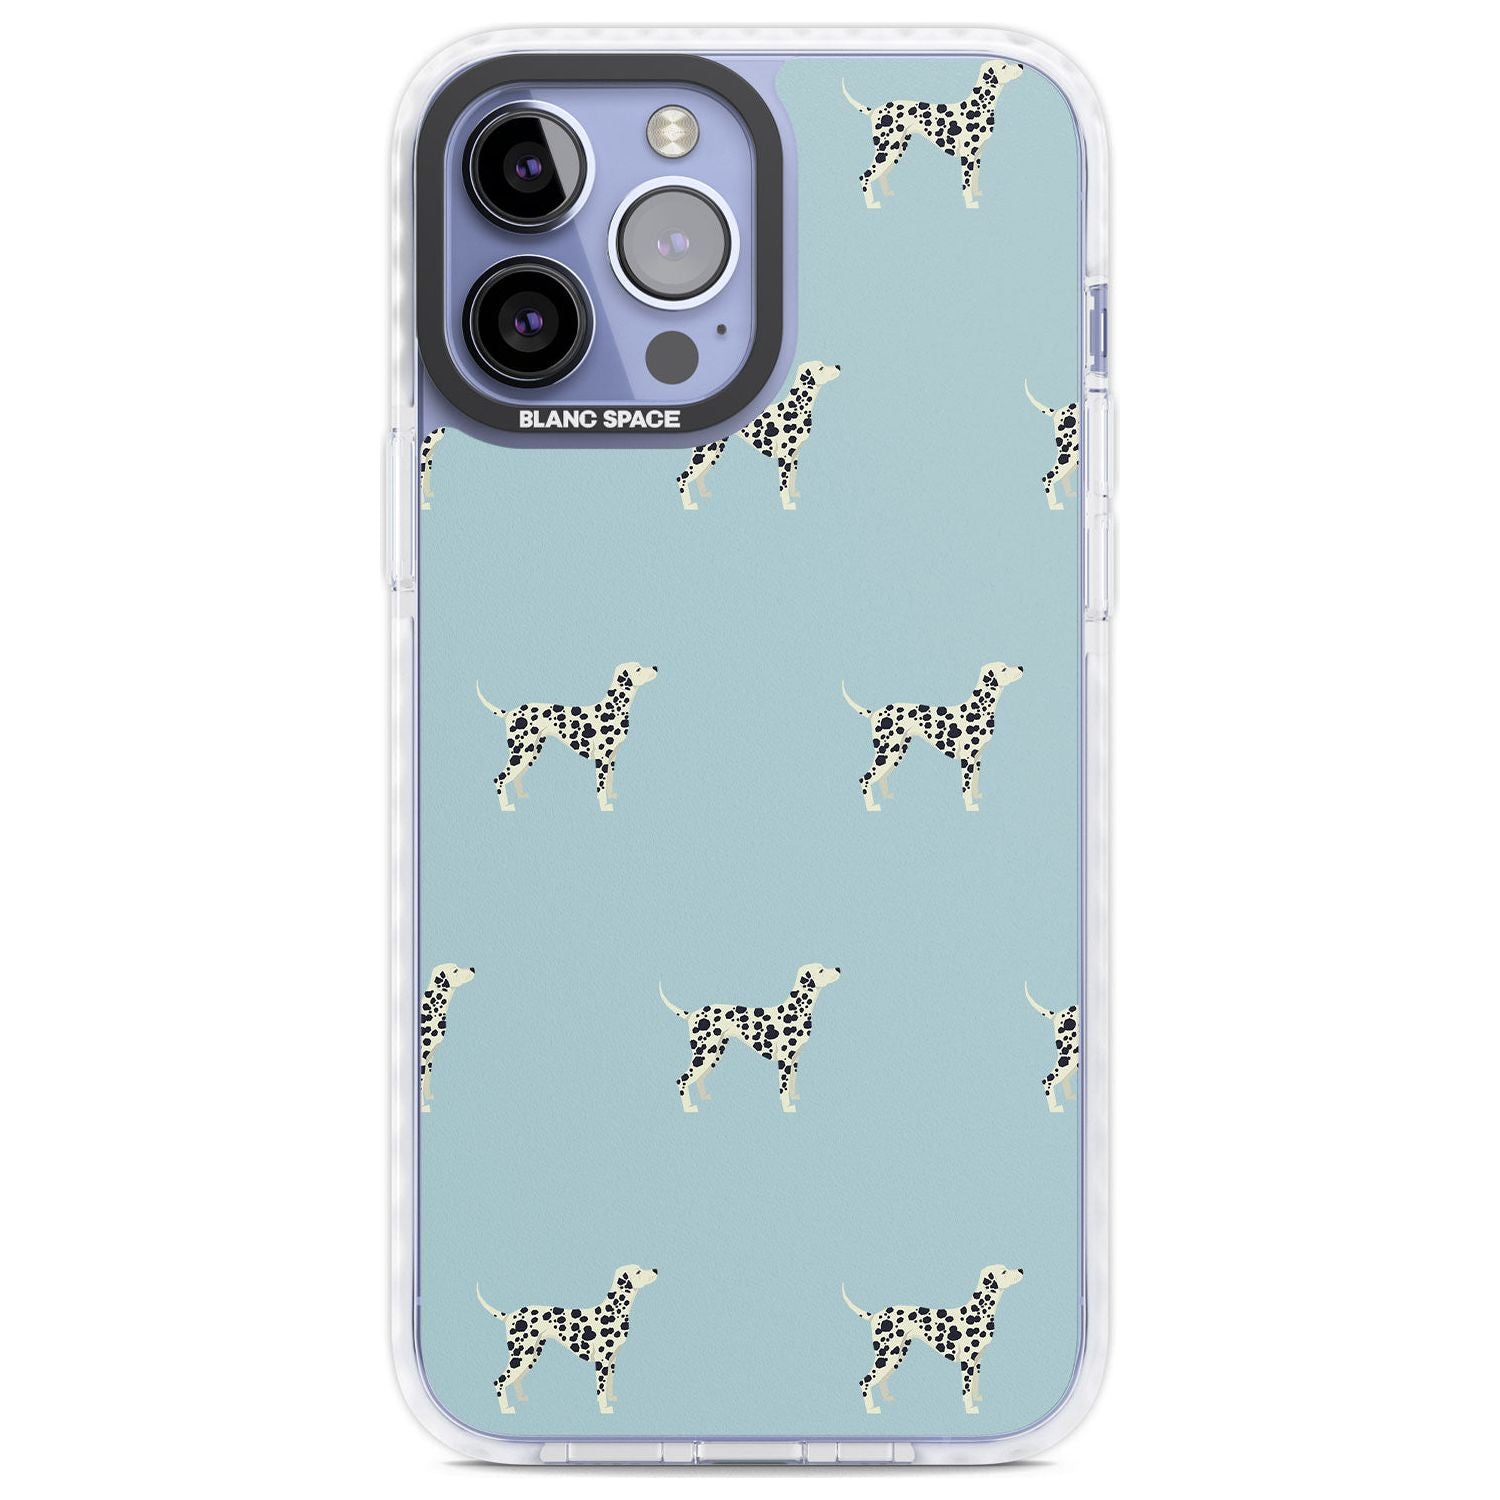 Dalmation Dog Pattern Phone Case iPhone 13 Pro Max / Impact Case,iPhone 14 Pro Max / Impact Case Blanc Space